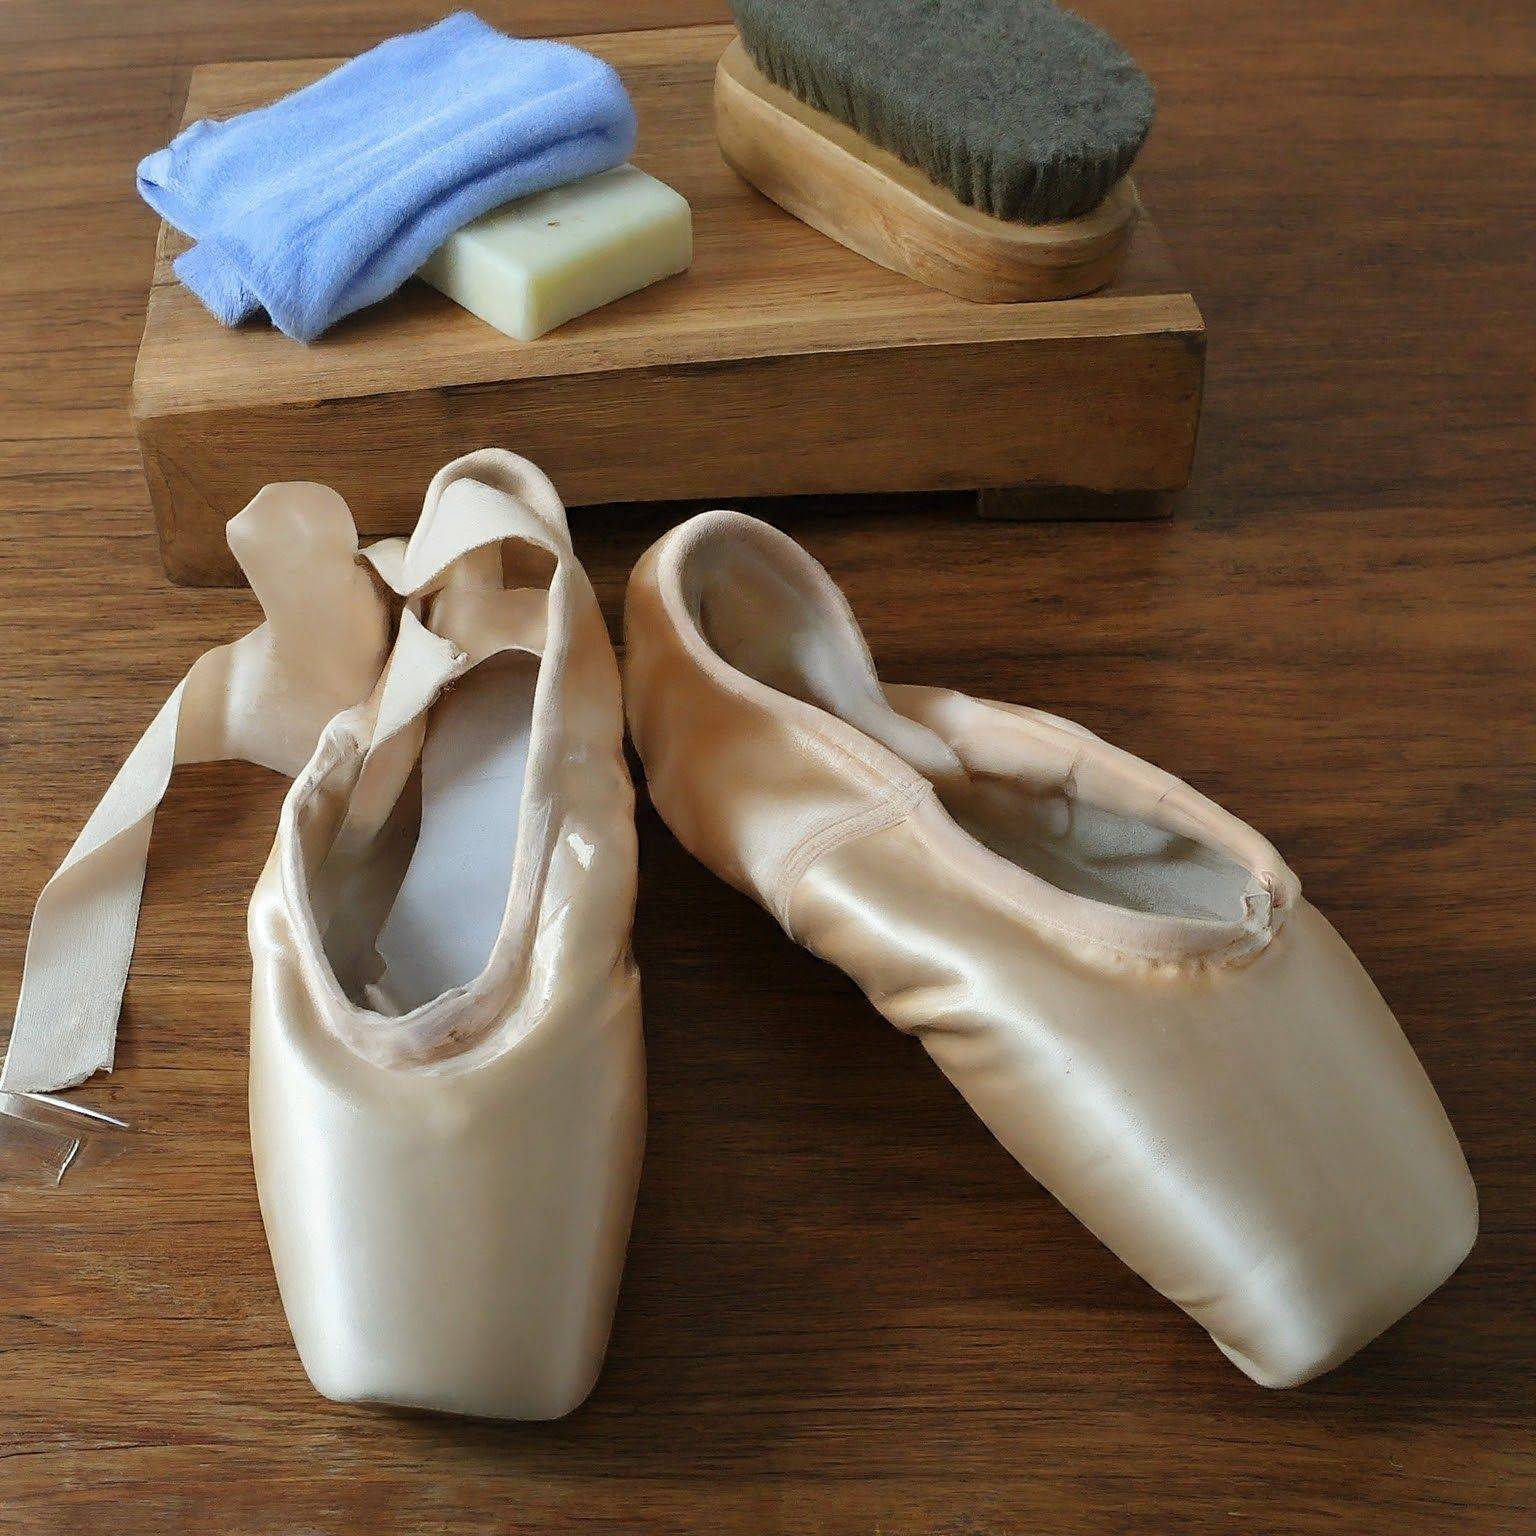 How to Clean Capezio Ballet Shoes